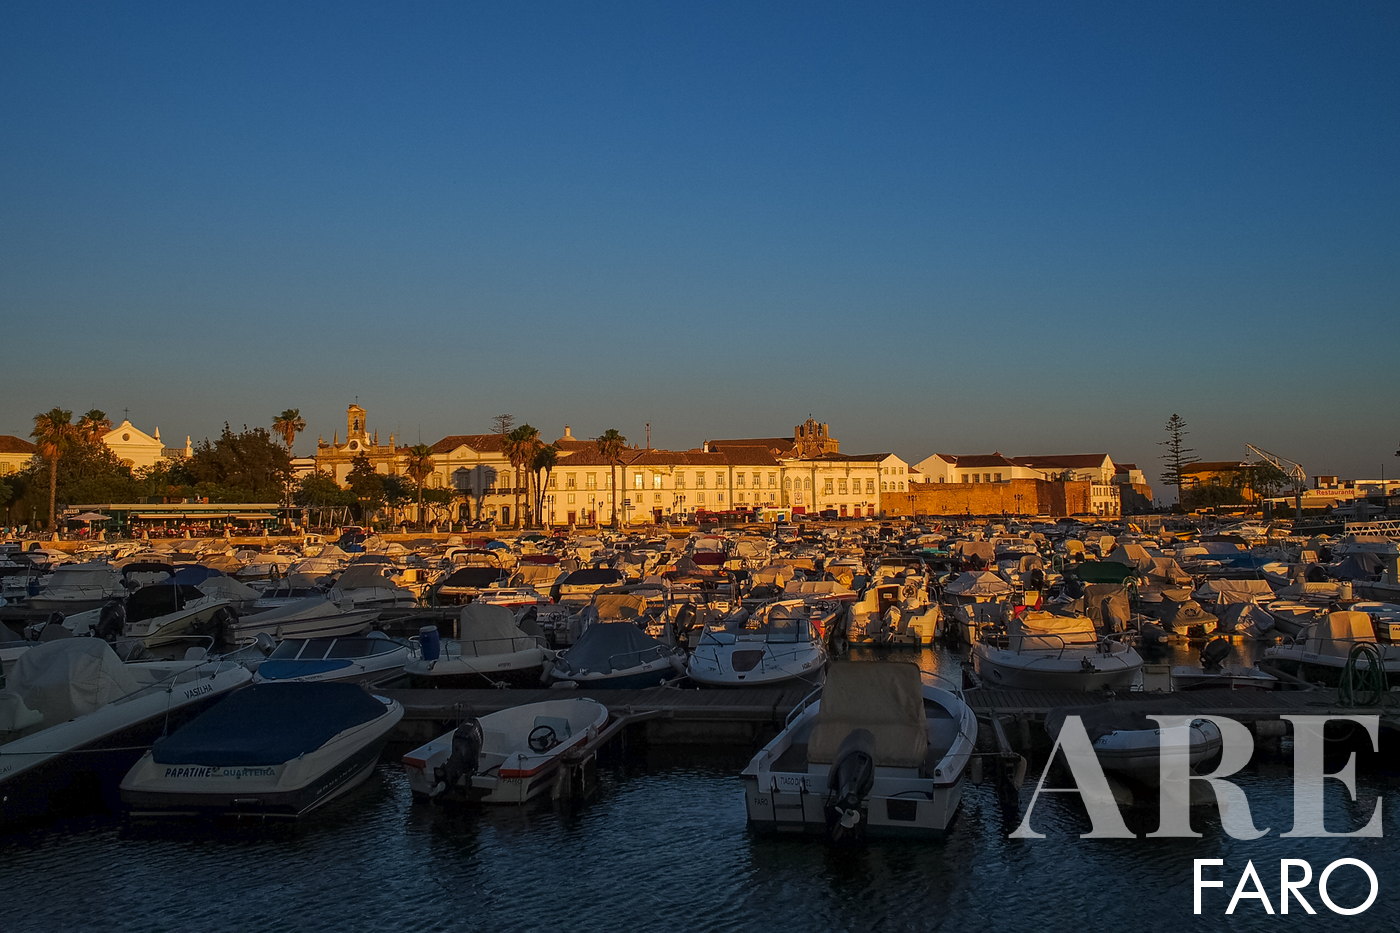 Faro Port, a quaint marina primarily designed for smaller boats